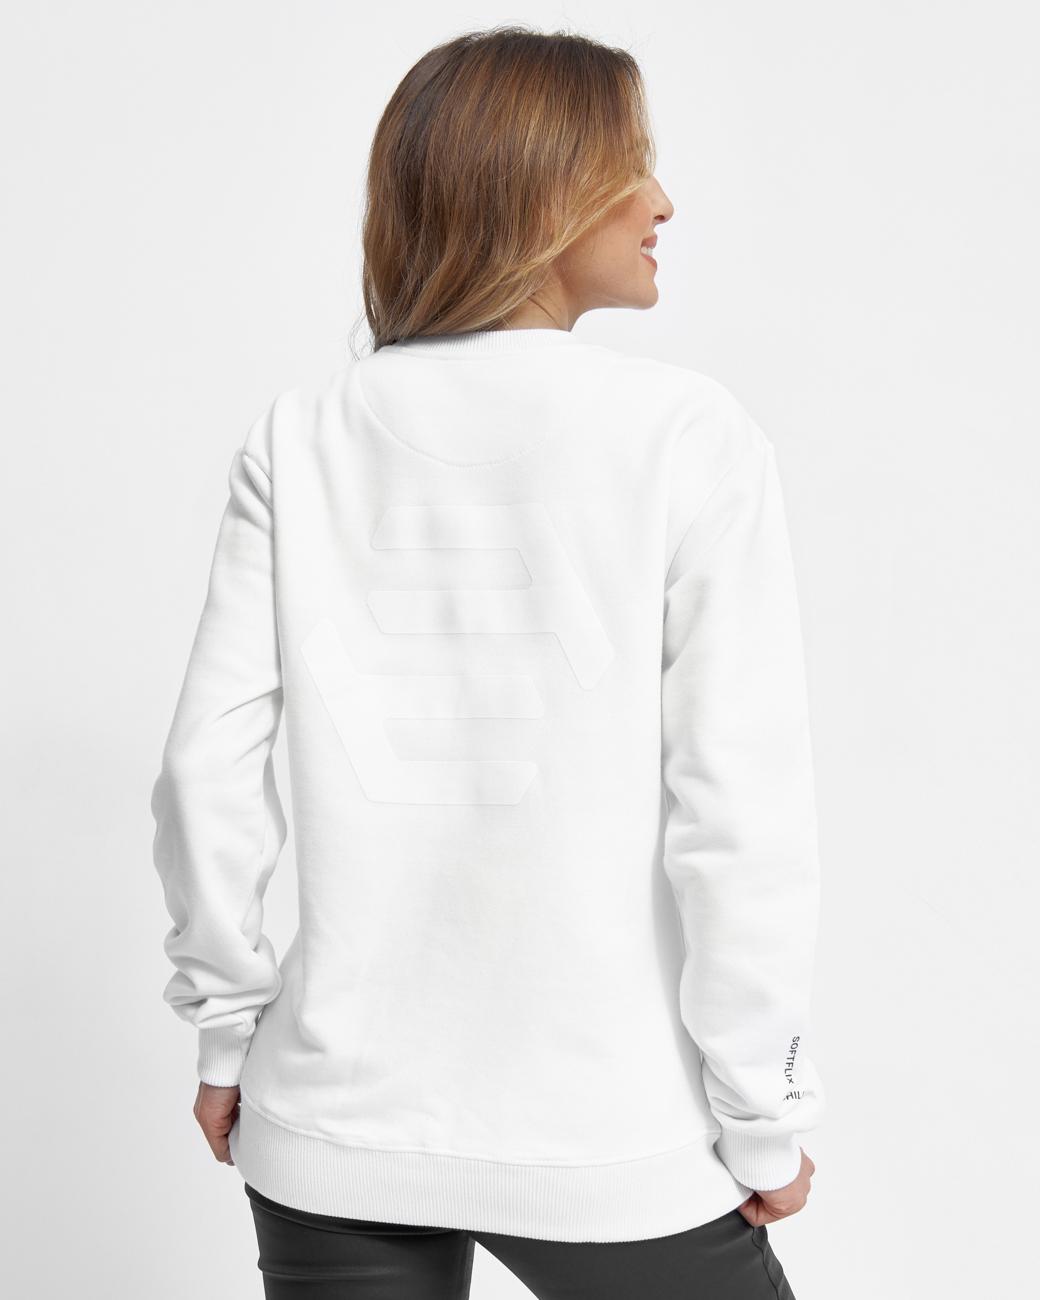 Sweatshirt SOFTFLIX white S